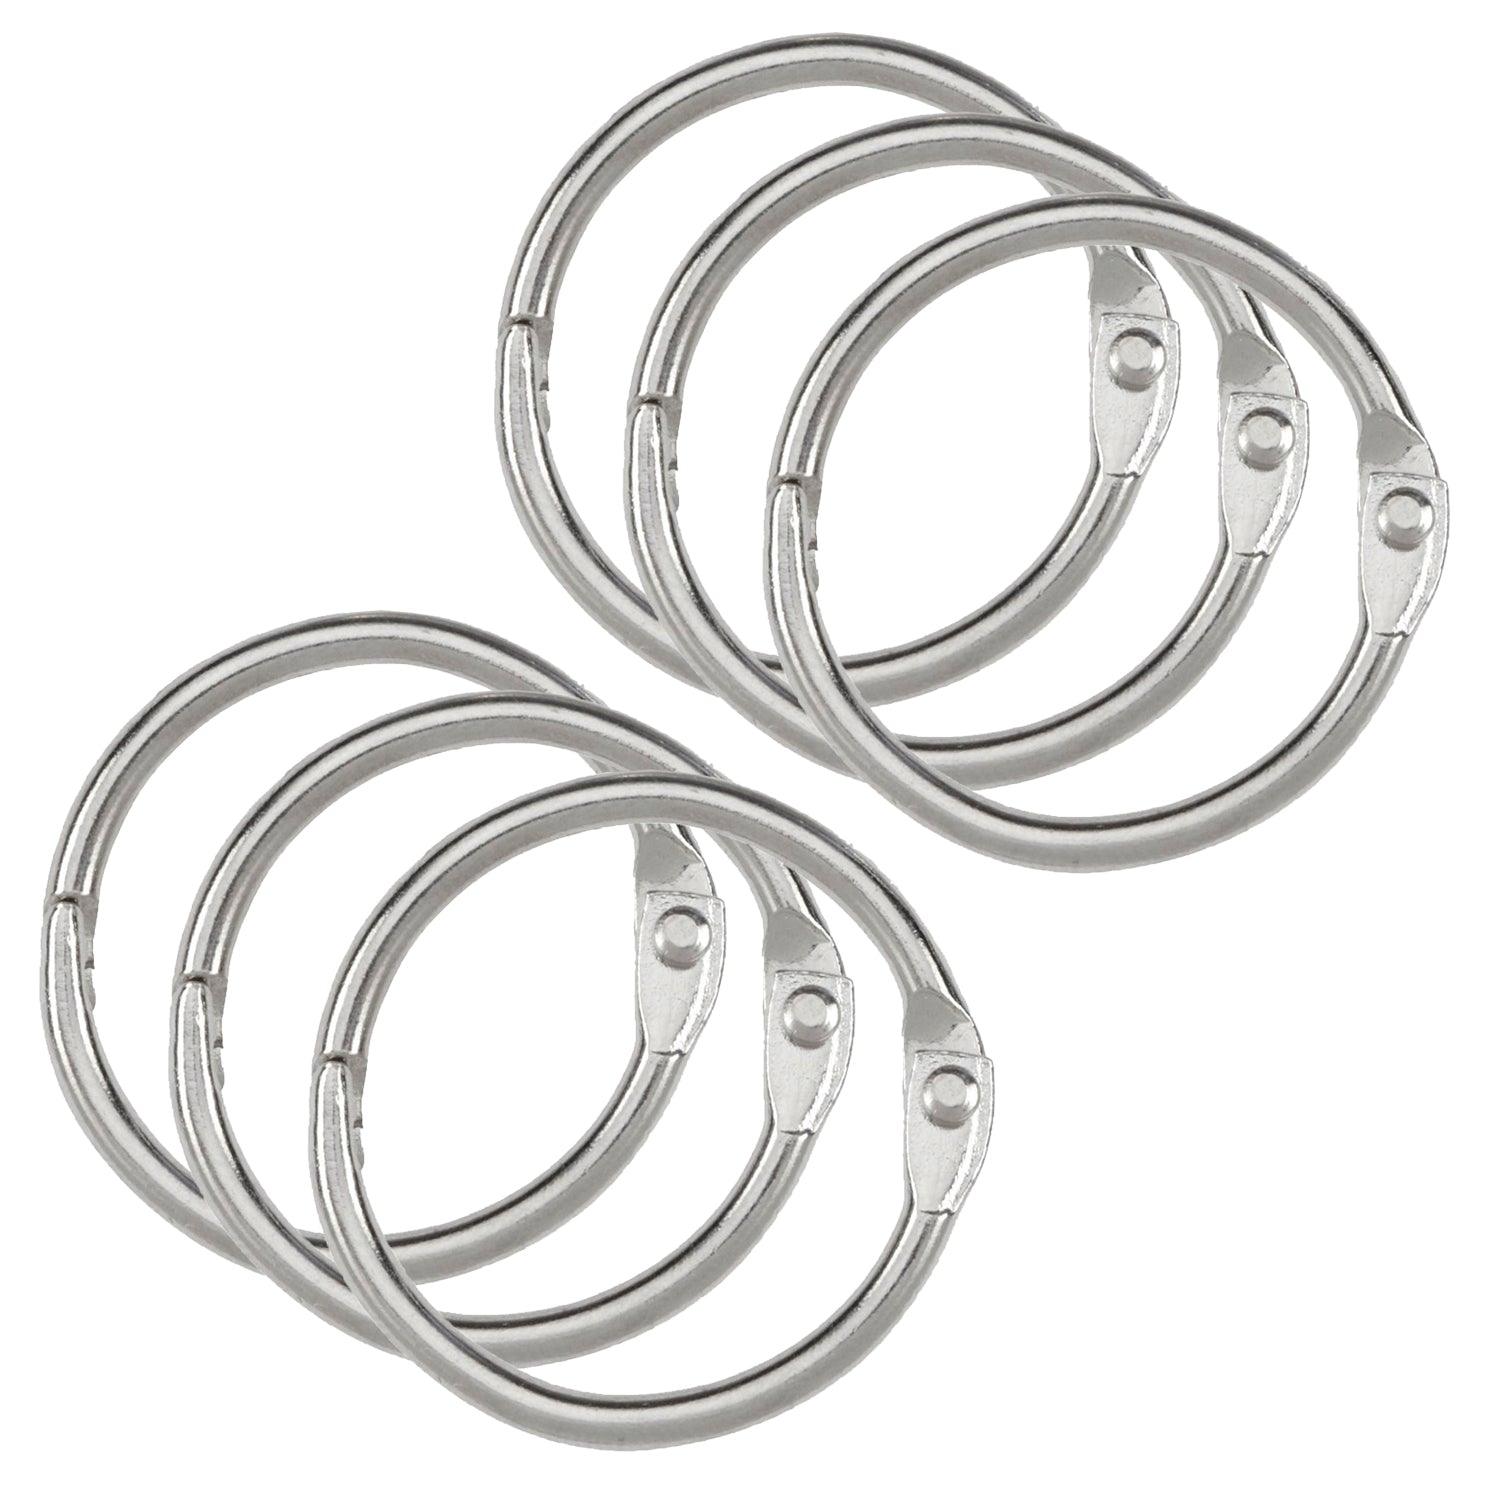 Binder Rings, 1.5", 6 Per Pack, 6 Packs - Loomini